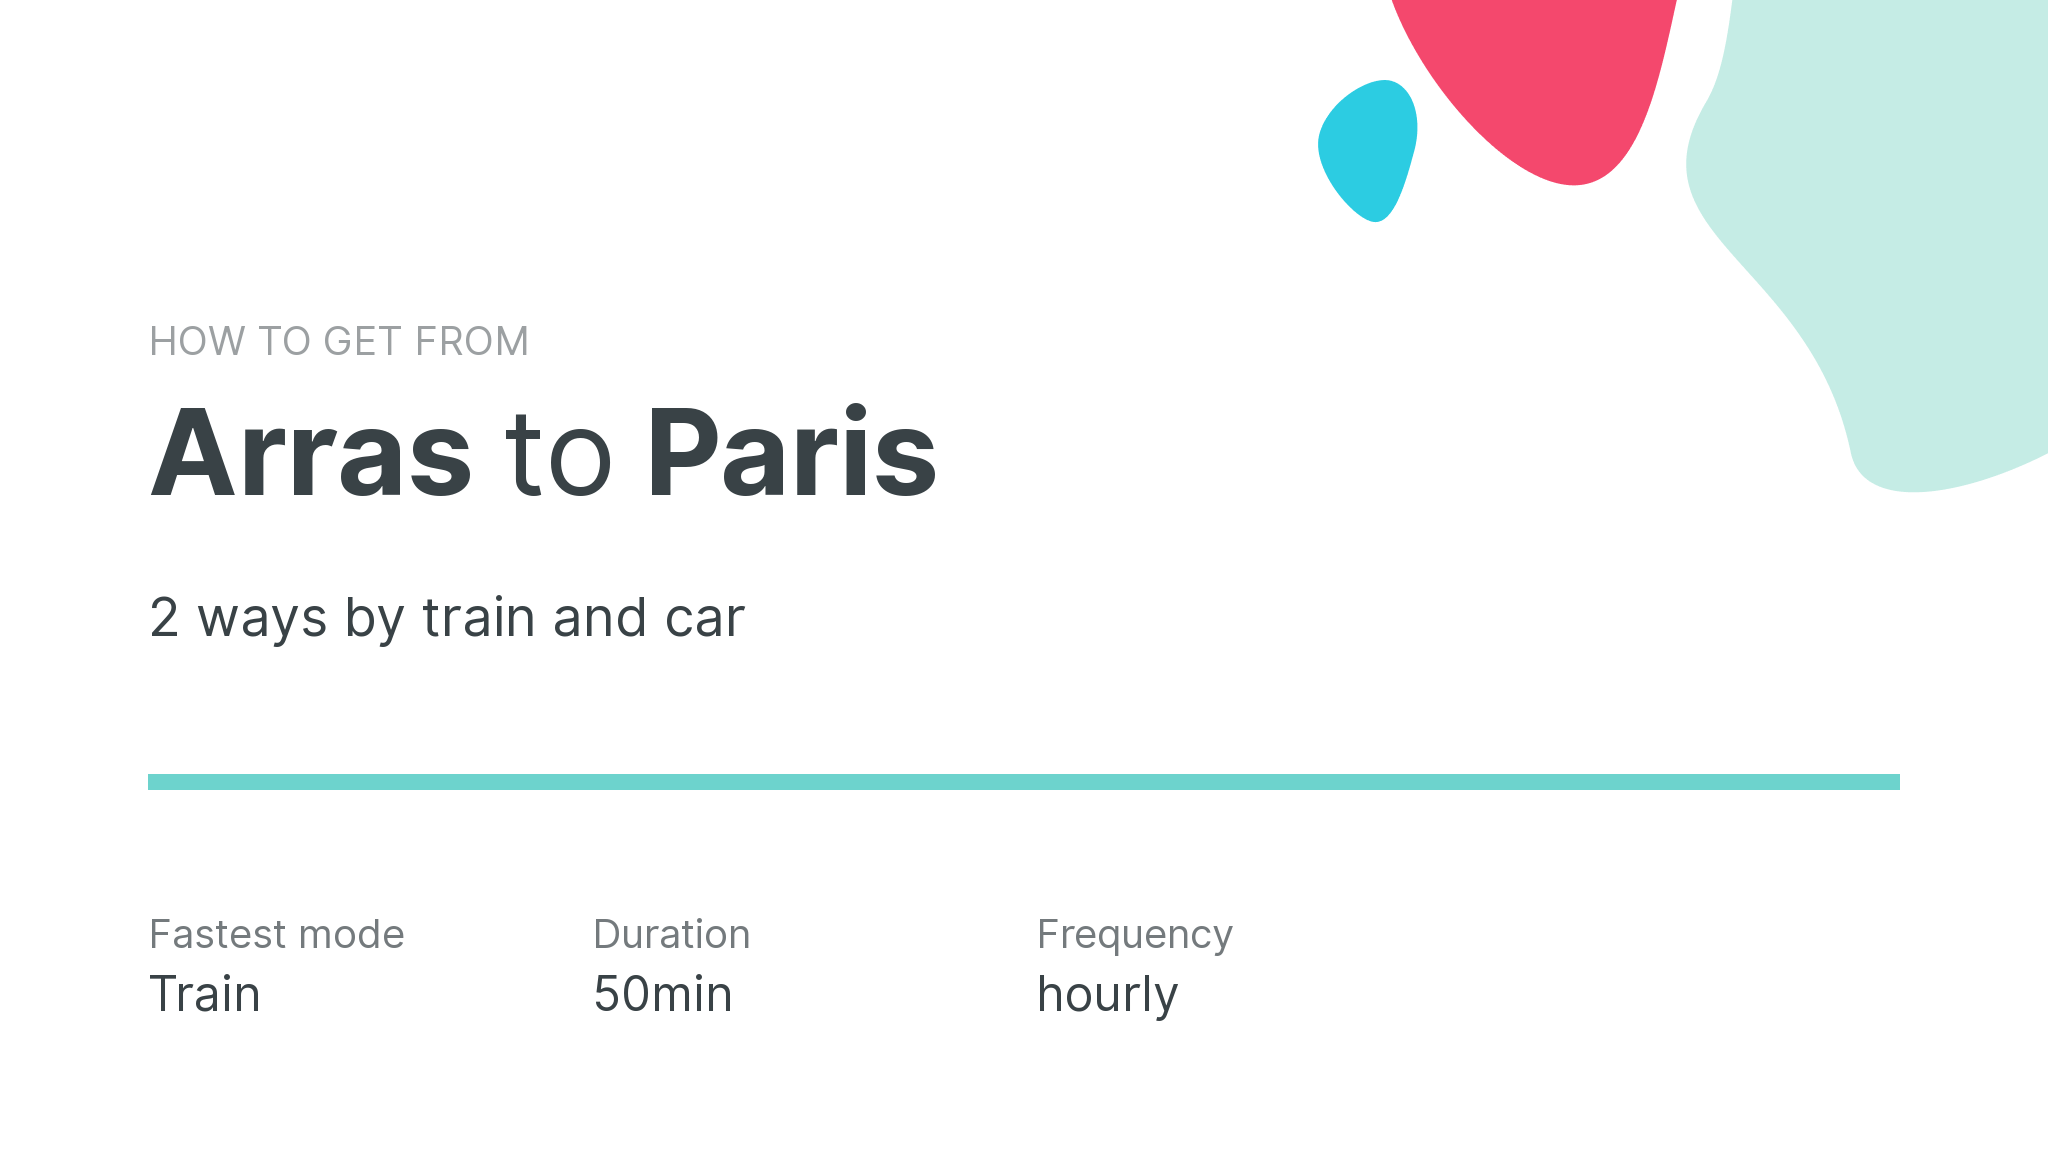 How do I get from Arras to Paris